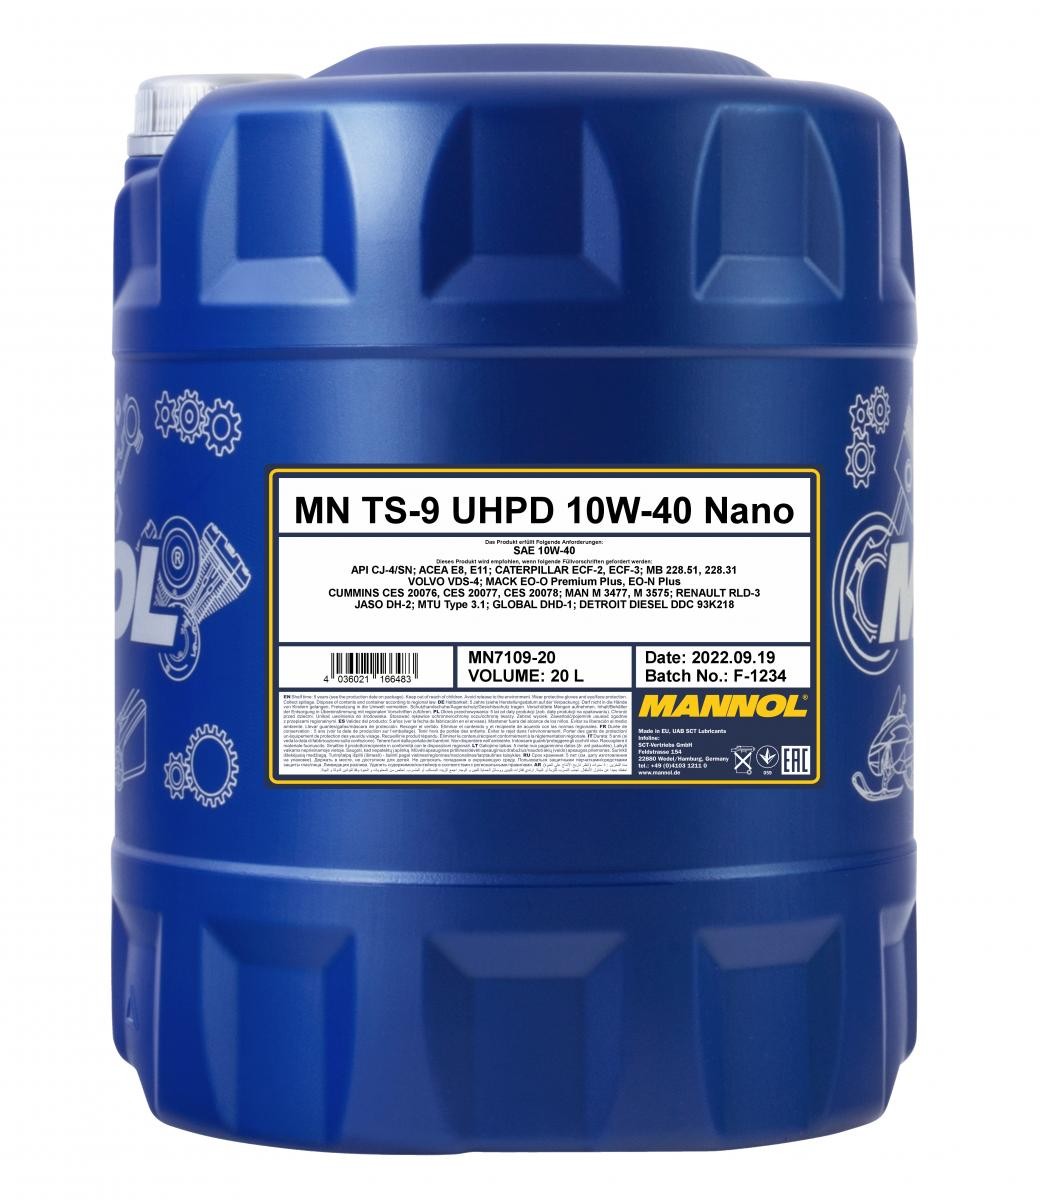 Öl 10W40 vollsynthetisches - MN7109-20 MANNOL TS-9, UHPD Nano